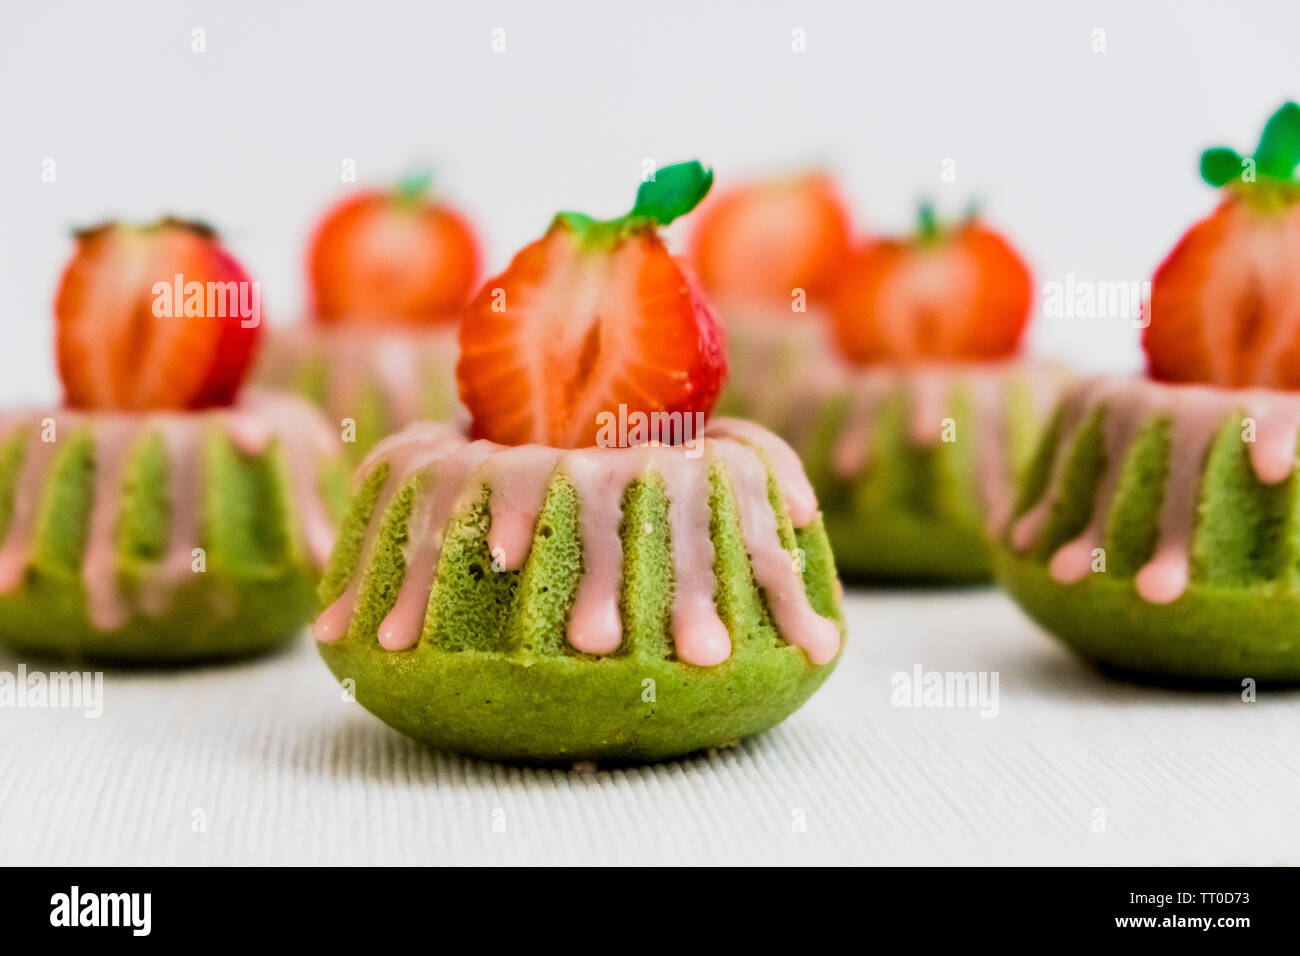 https://c8.alamy.com/compes/tt0d73/te-verde-matcha-mini-bundt-cakes-rociados-con-glaseado-de-fresa-y-cubierto-con-la-mitad-fresas-frescas-tt0d73.jpg